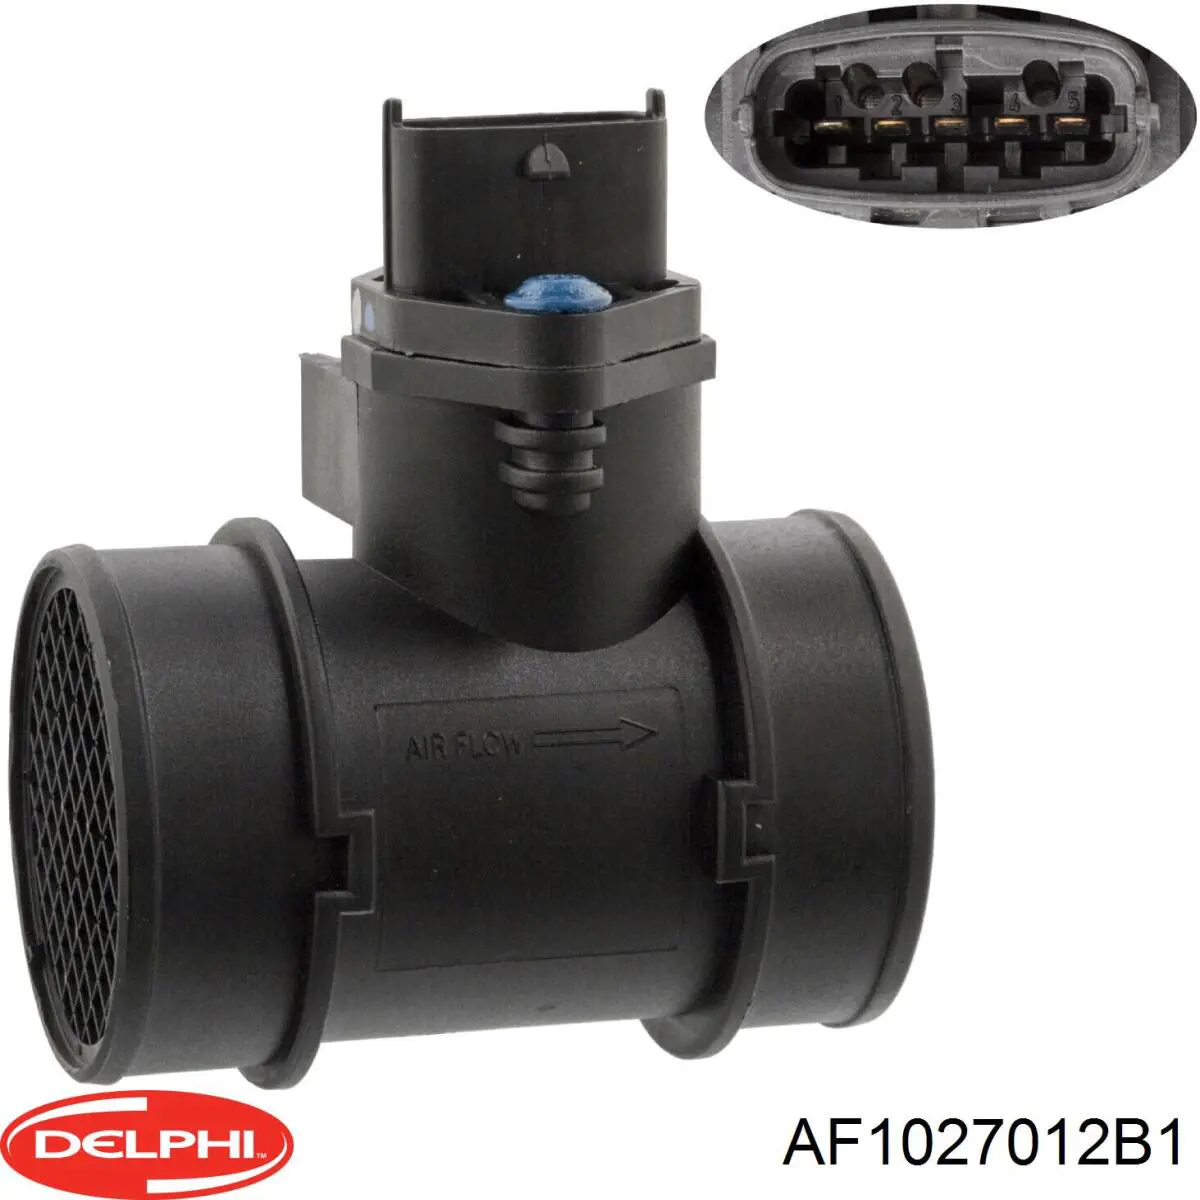 AF1027012B1 Delphi sensor de fluxo (consumo de ar, medidor de consumo M.A.F. - (Mass Airflow))